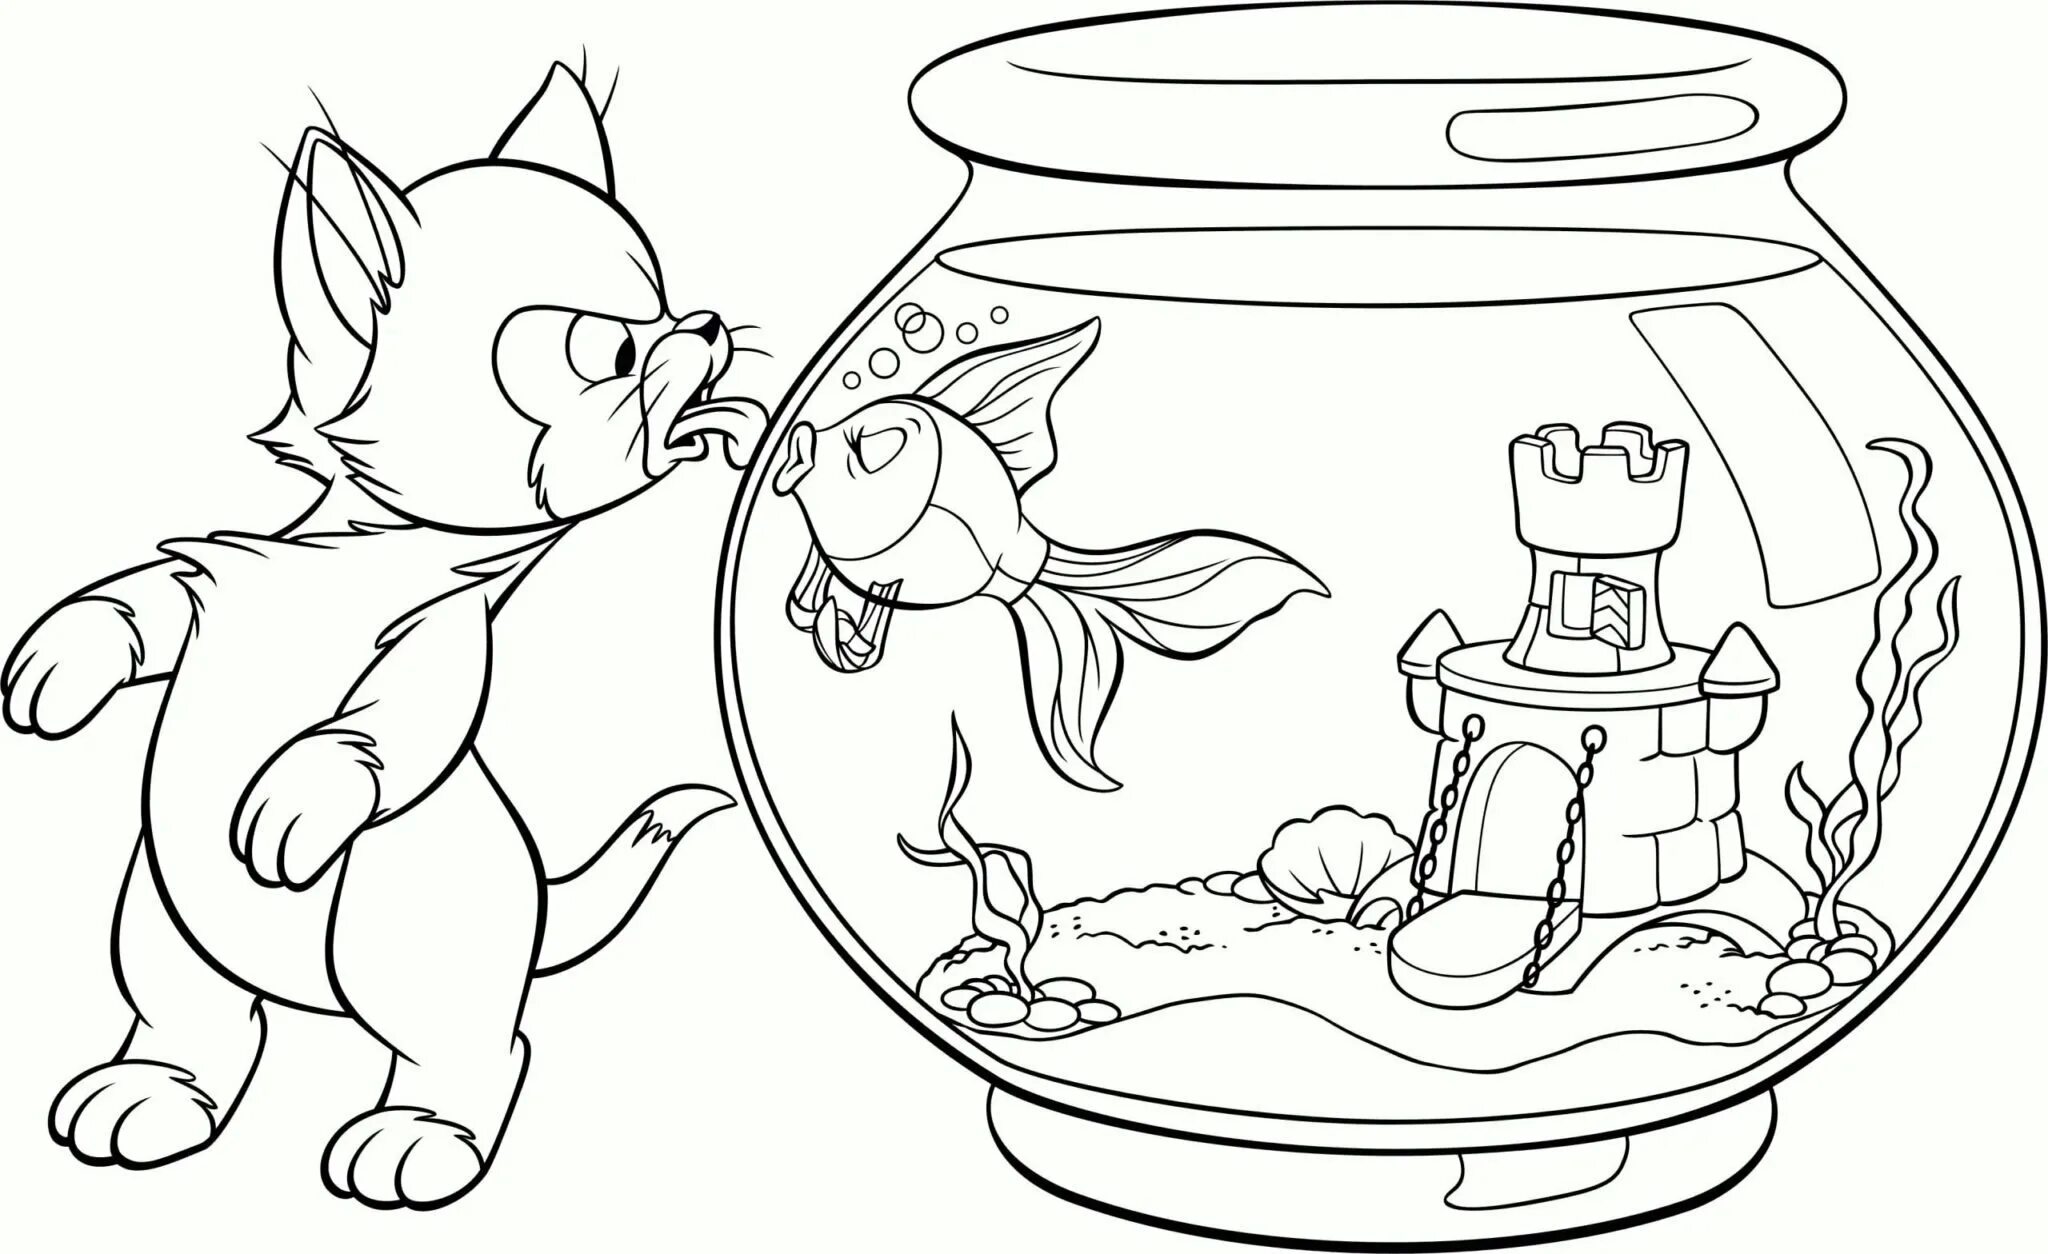 Лучшие раскраски а4. Раскраска. Рисунки для раскрашивания. Аквариум раскраска. Раскраска аквариум с рыбками для детей.